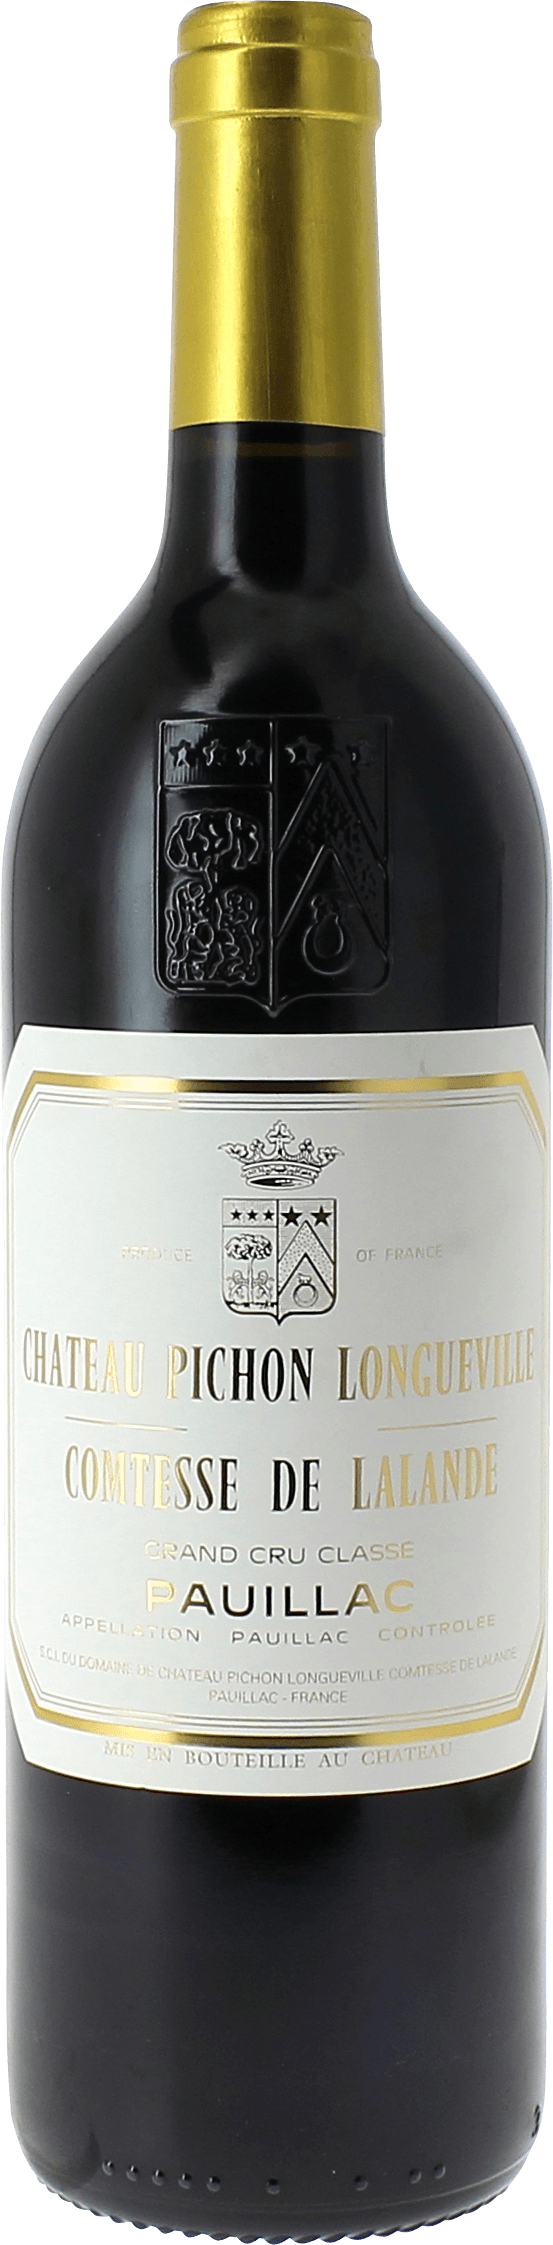 Pichon comtesse de lalande 1988 2me Grand cru class Pauillac, Bordeaux rouge